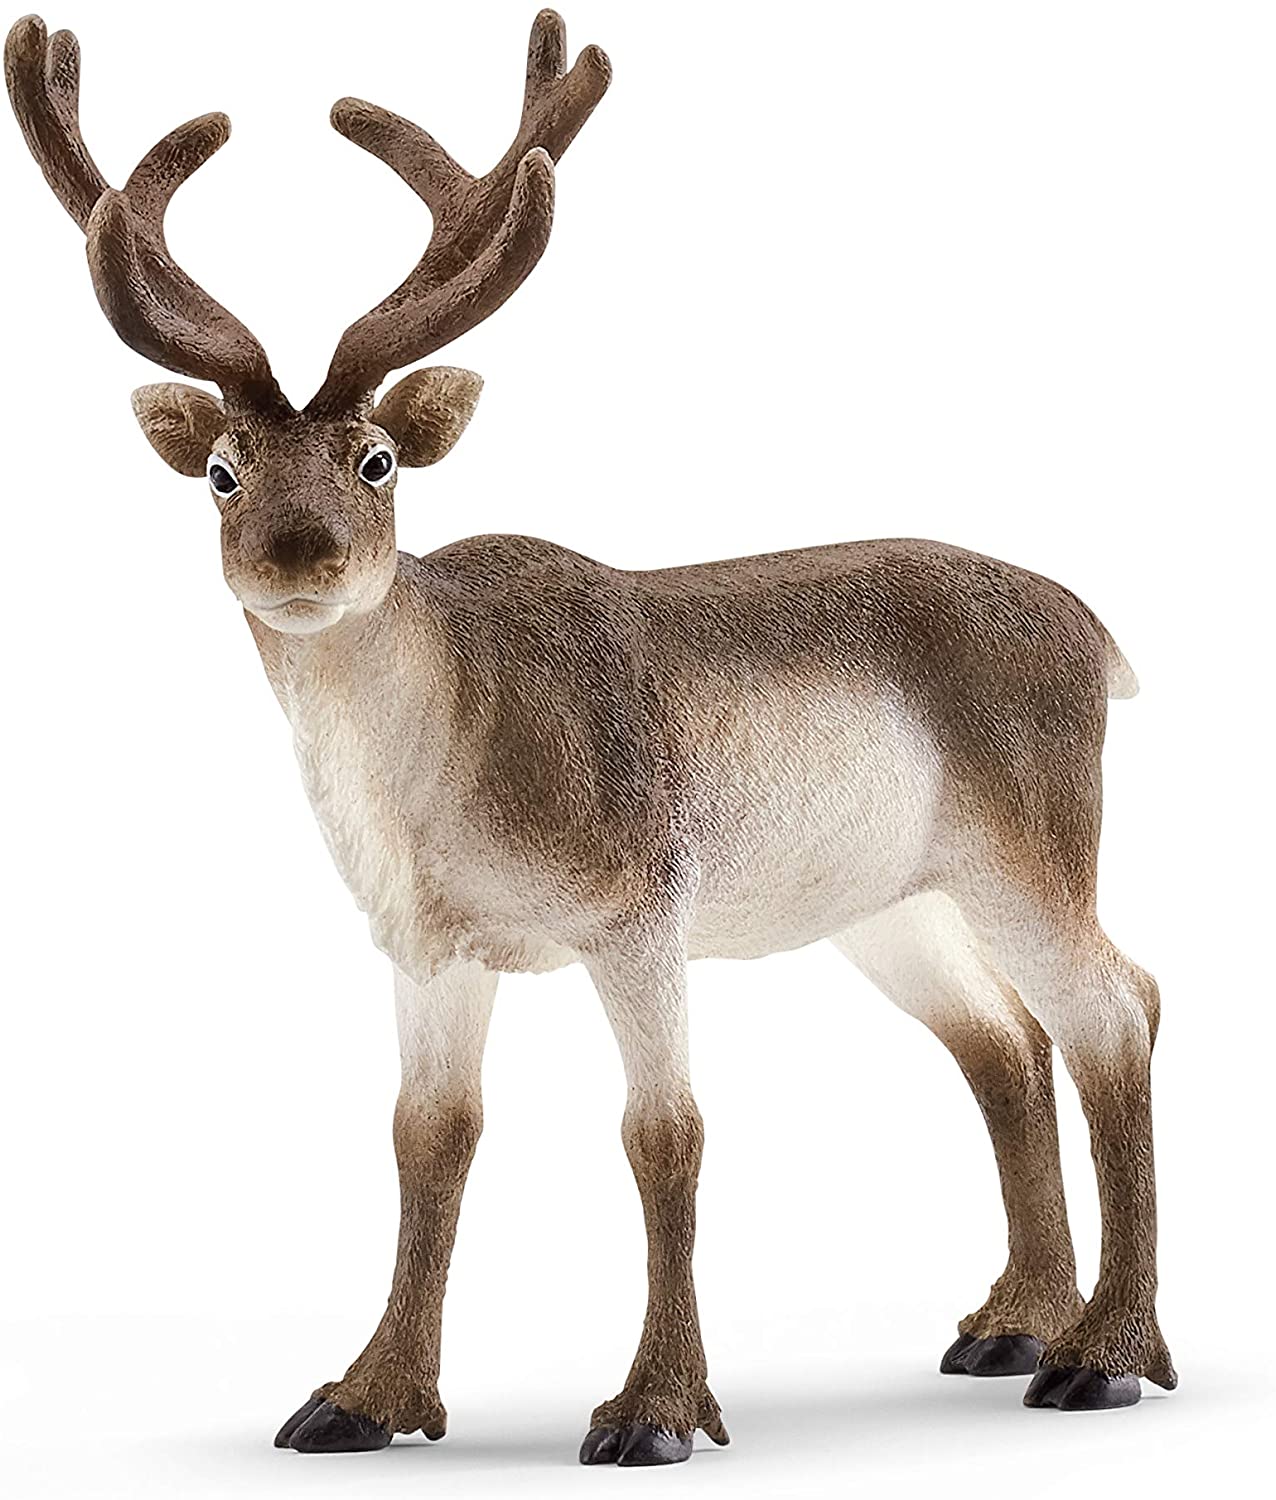 Reindeer - Ages 3+